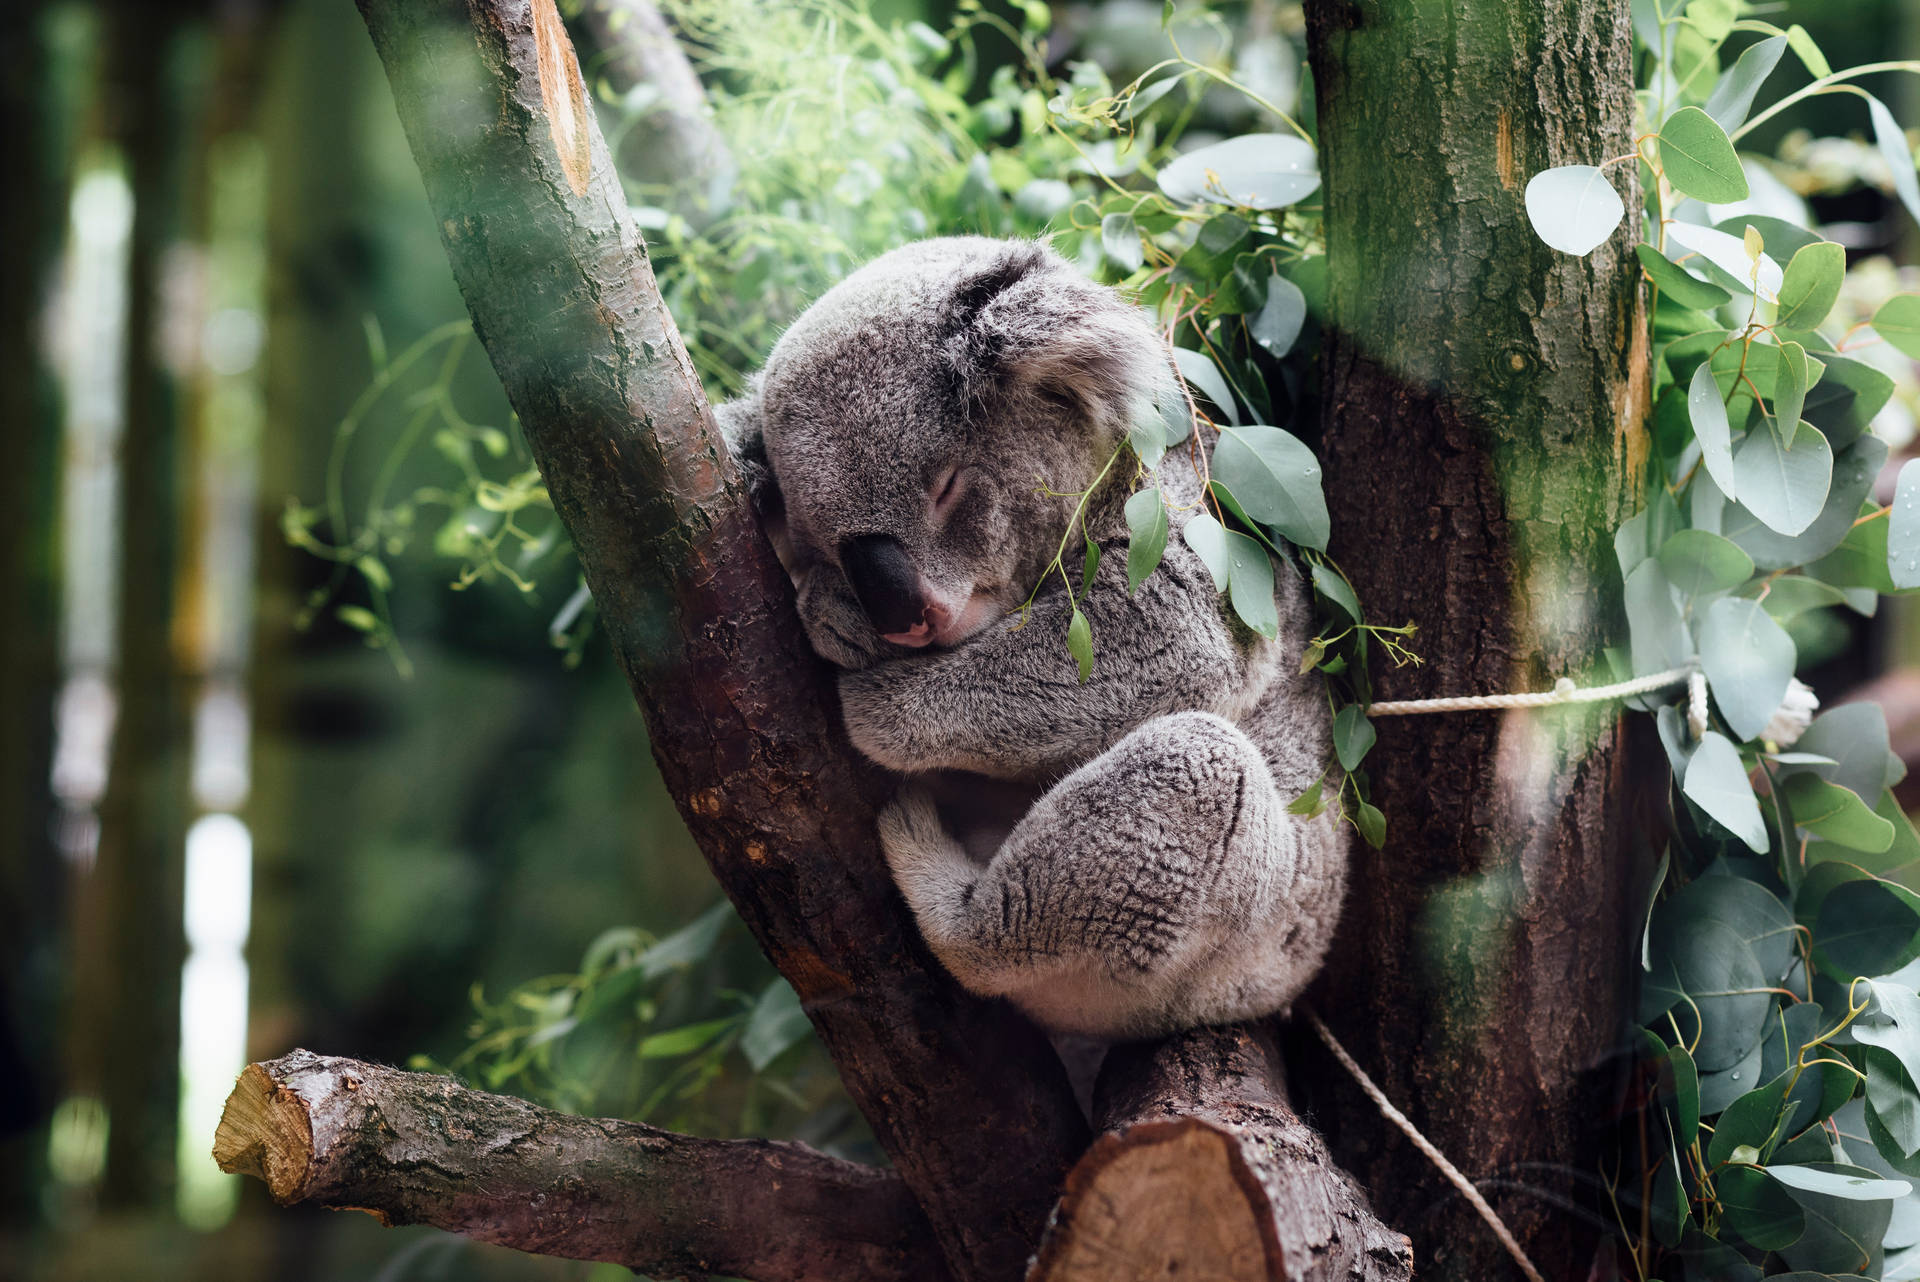 Caption: Adorable Koala Resting Comfortably On A Eucalyptus Branch